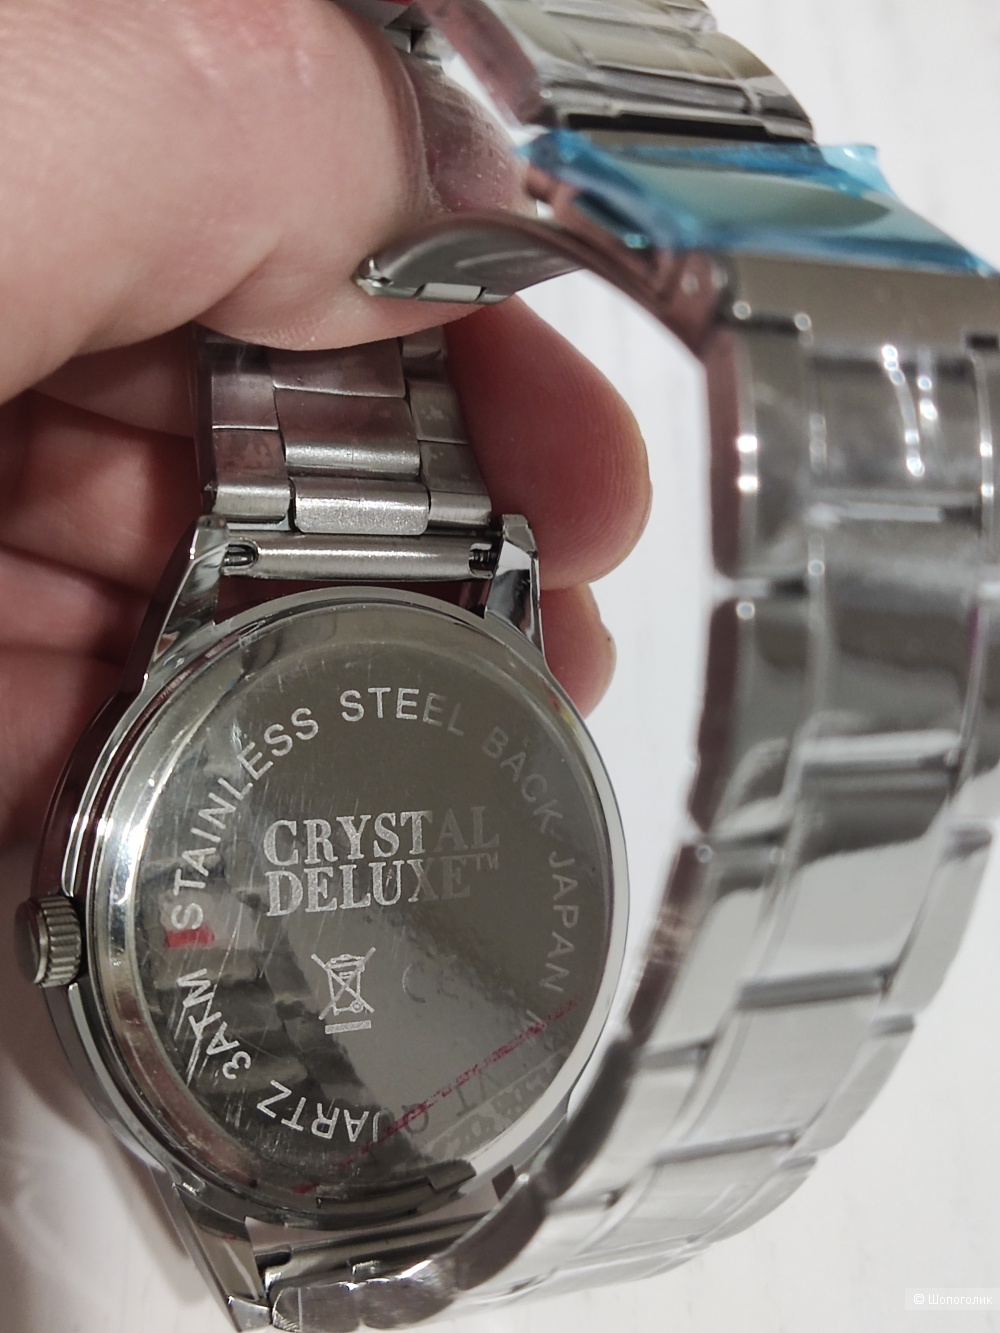 Часы Crystal Deluxe, medium